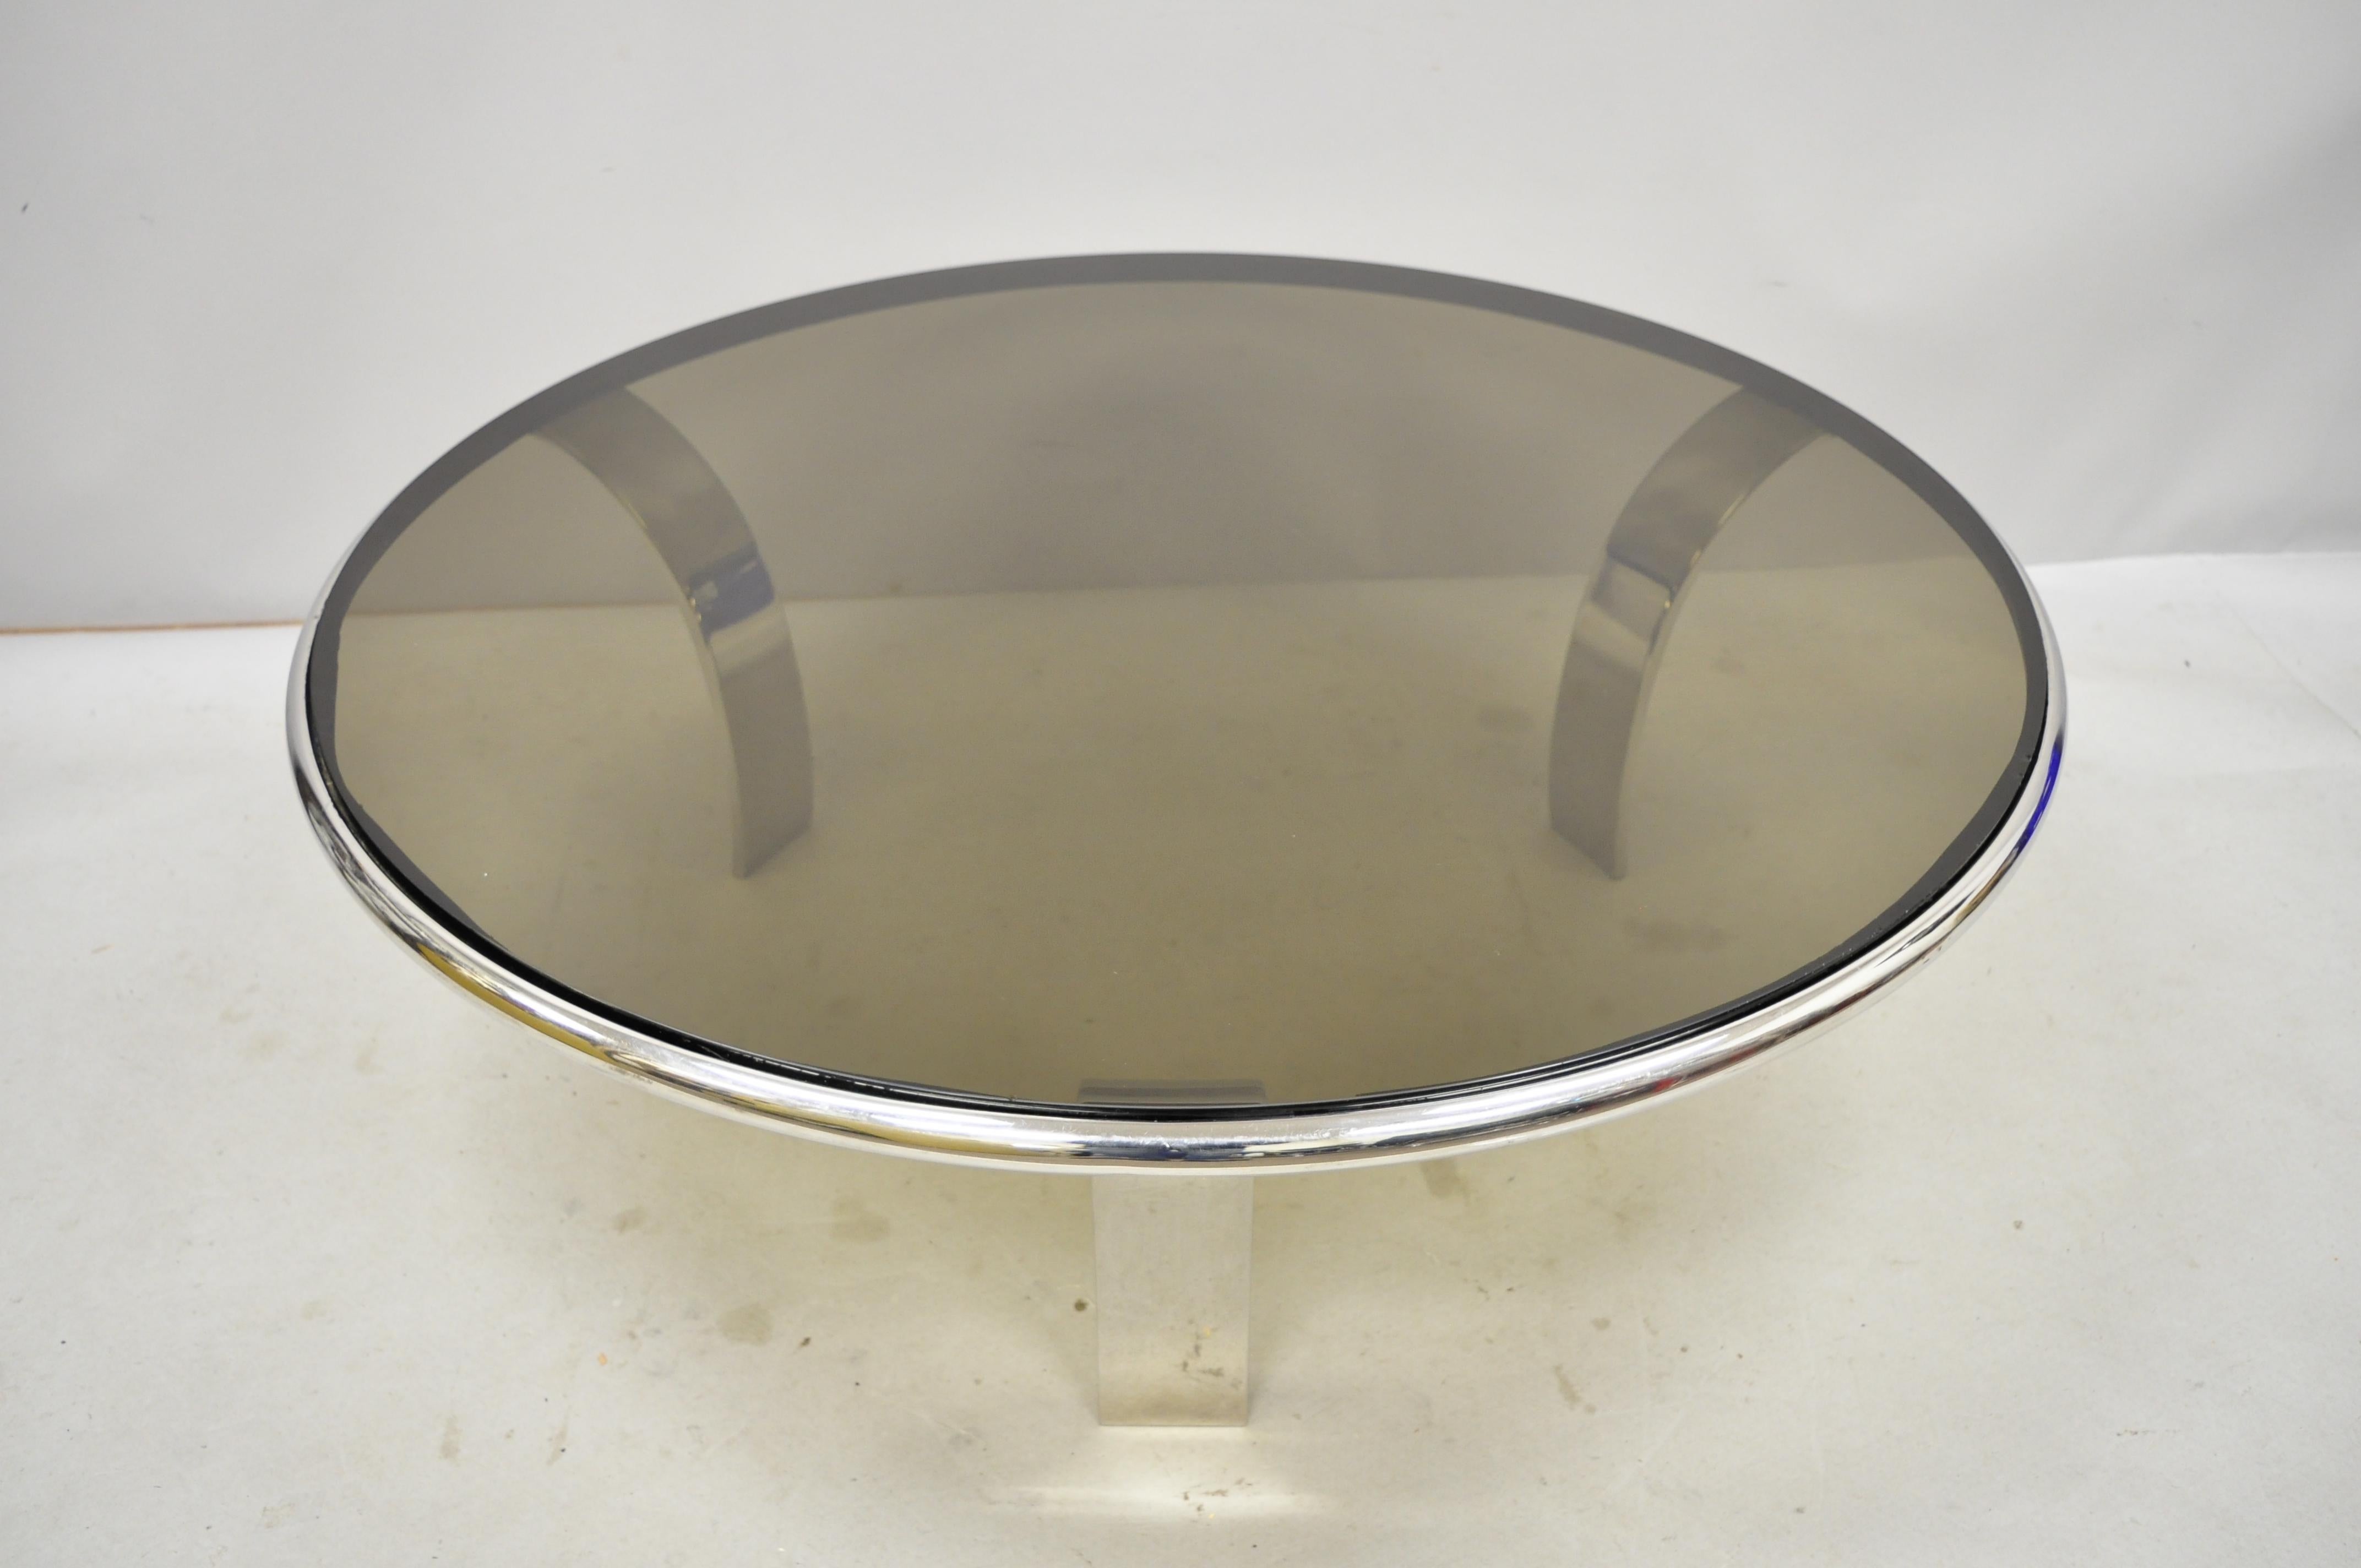 Gardner leaver for steelcase chrome steel round smoked glass coffee table. La liste comprend une lourde structure en acier chromé, des pieds incurvés, un plateau rond en verre fumé, des lignes modernistes épurées, une forme sculpturale élégante,